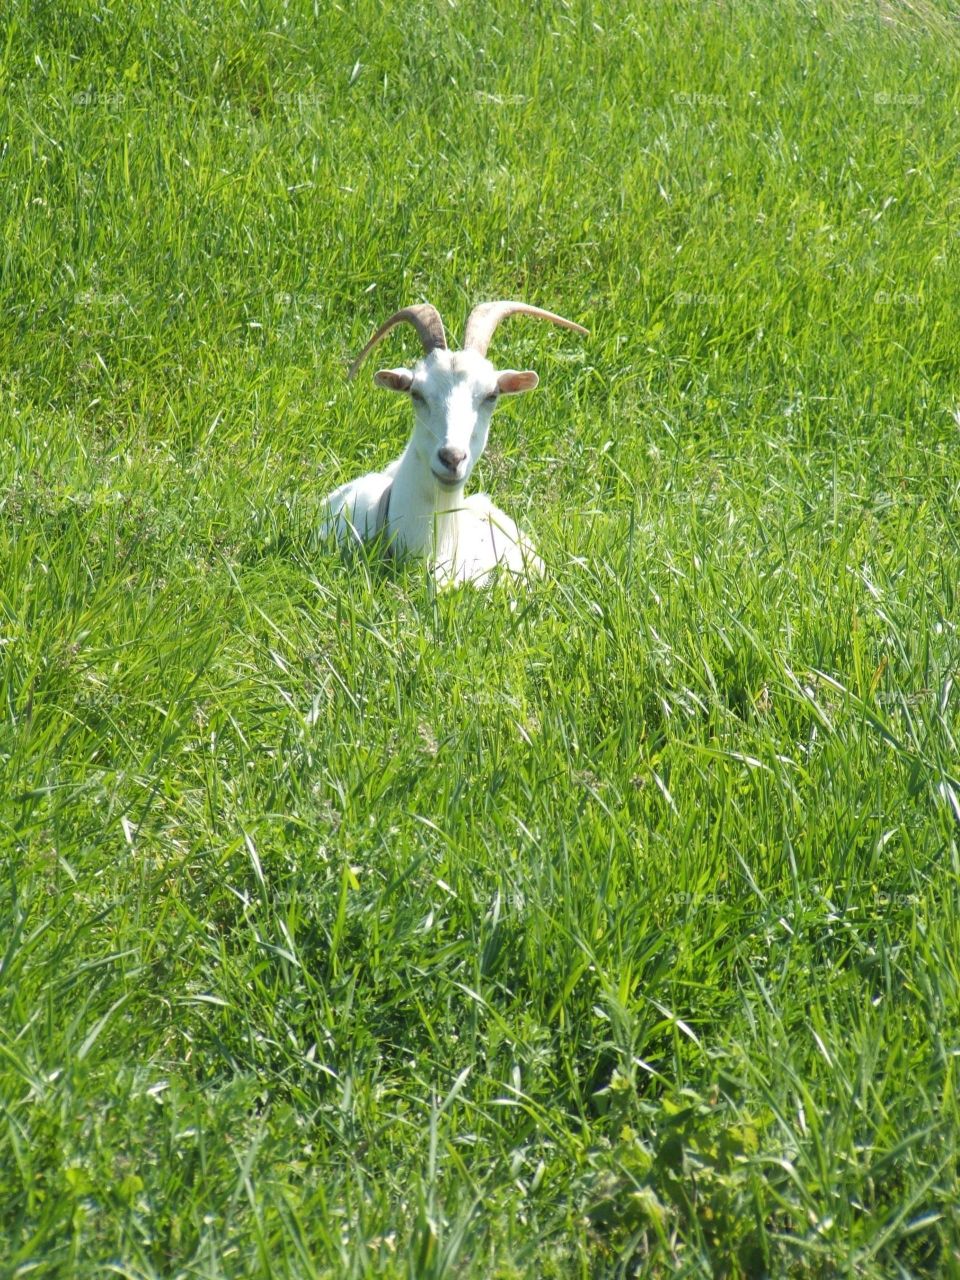 Goat in field